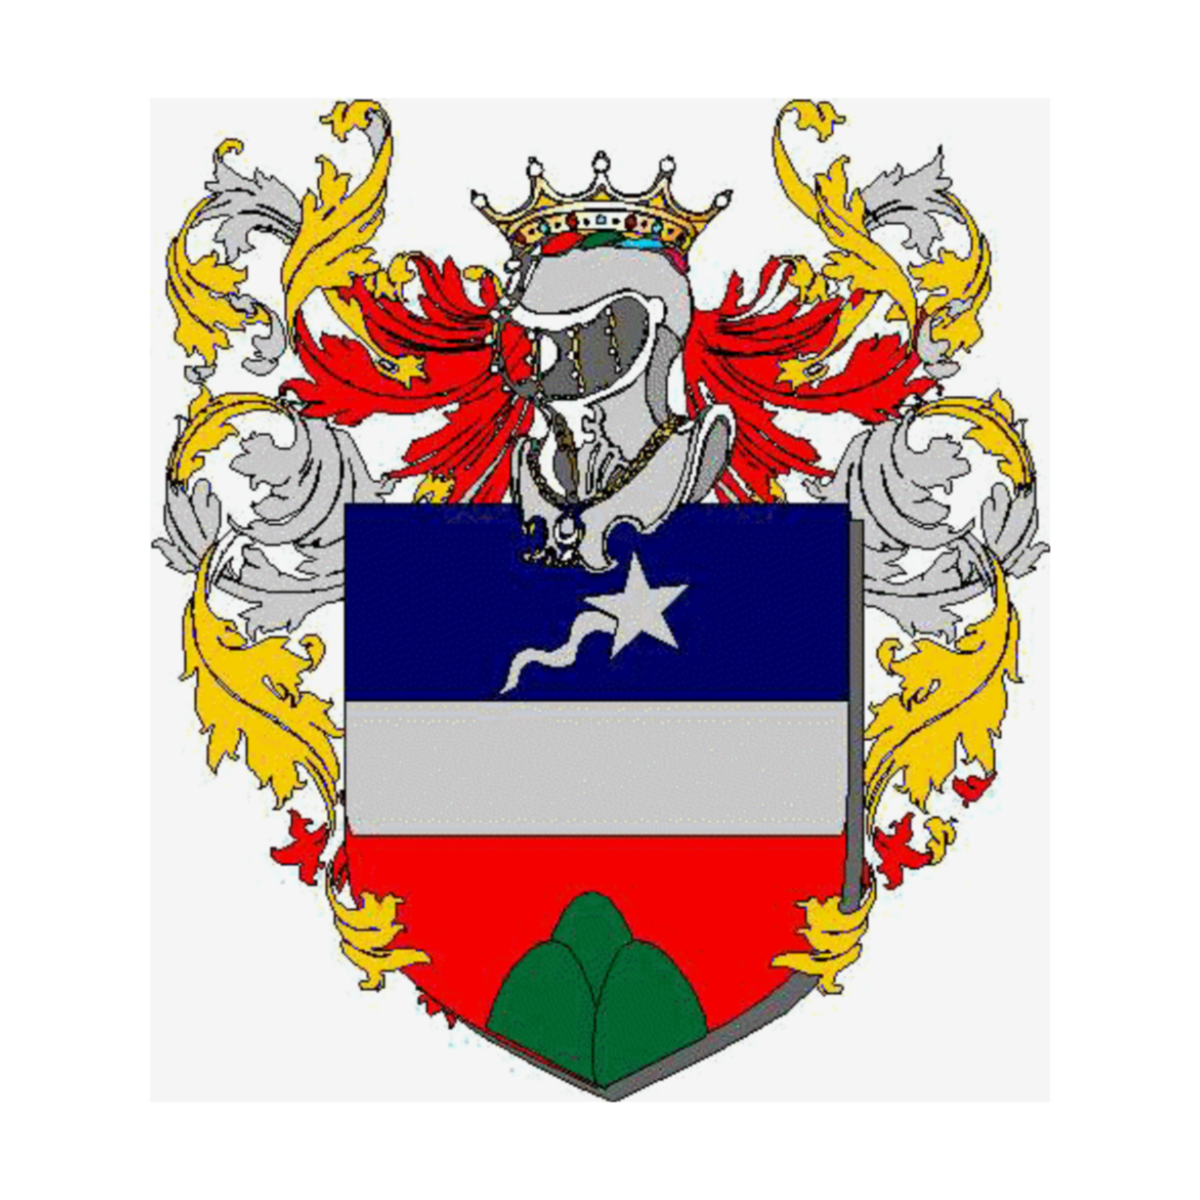 Escudo de la familiaSacconi, Sacconi del Drago,Sacconi Vitalini